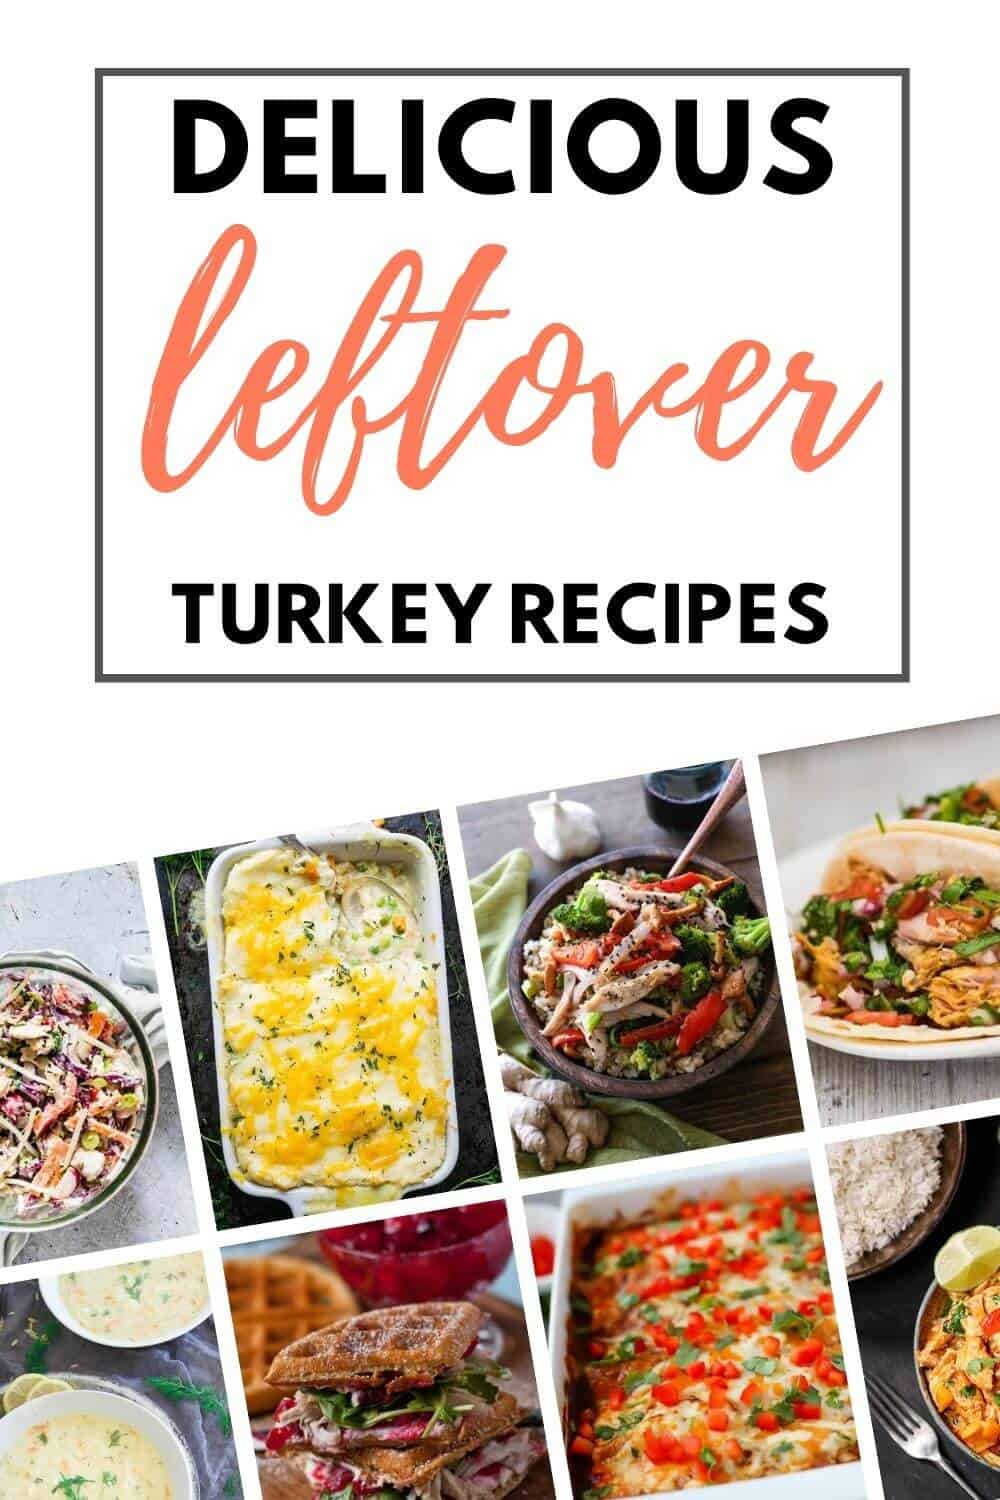 Leftover turkey recipes ideas